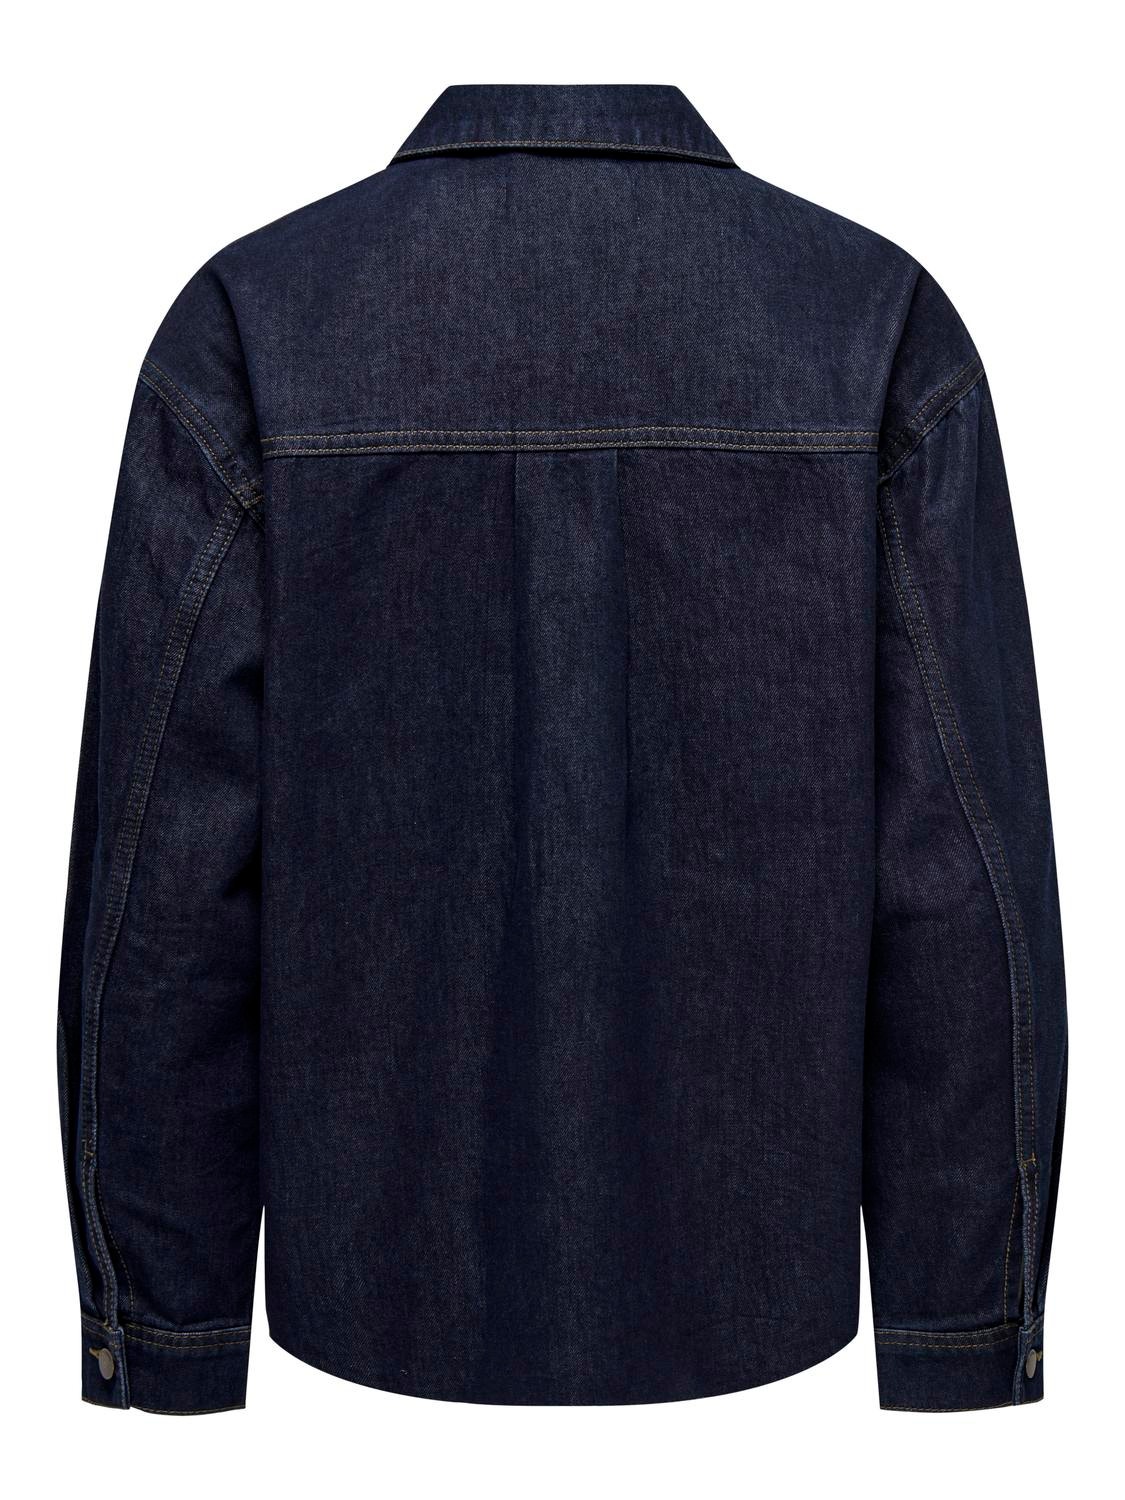 ONLY V-Neck Buttoned cuffs Jacket -Dark Blue Denim - 15256103